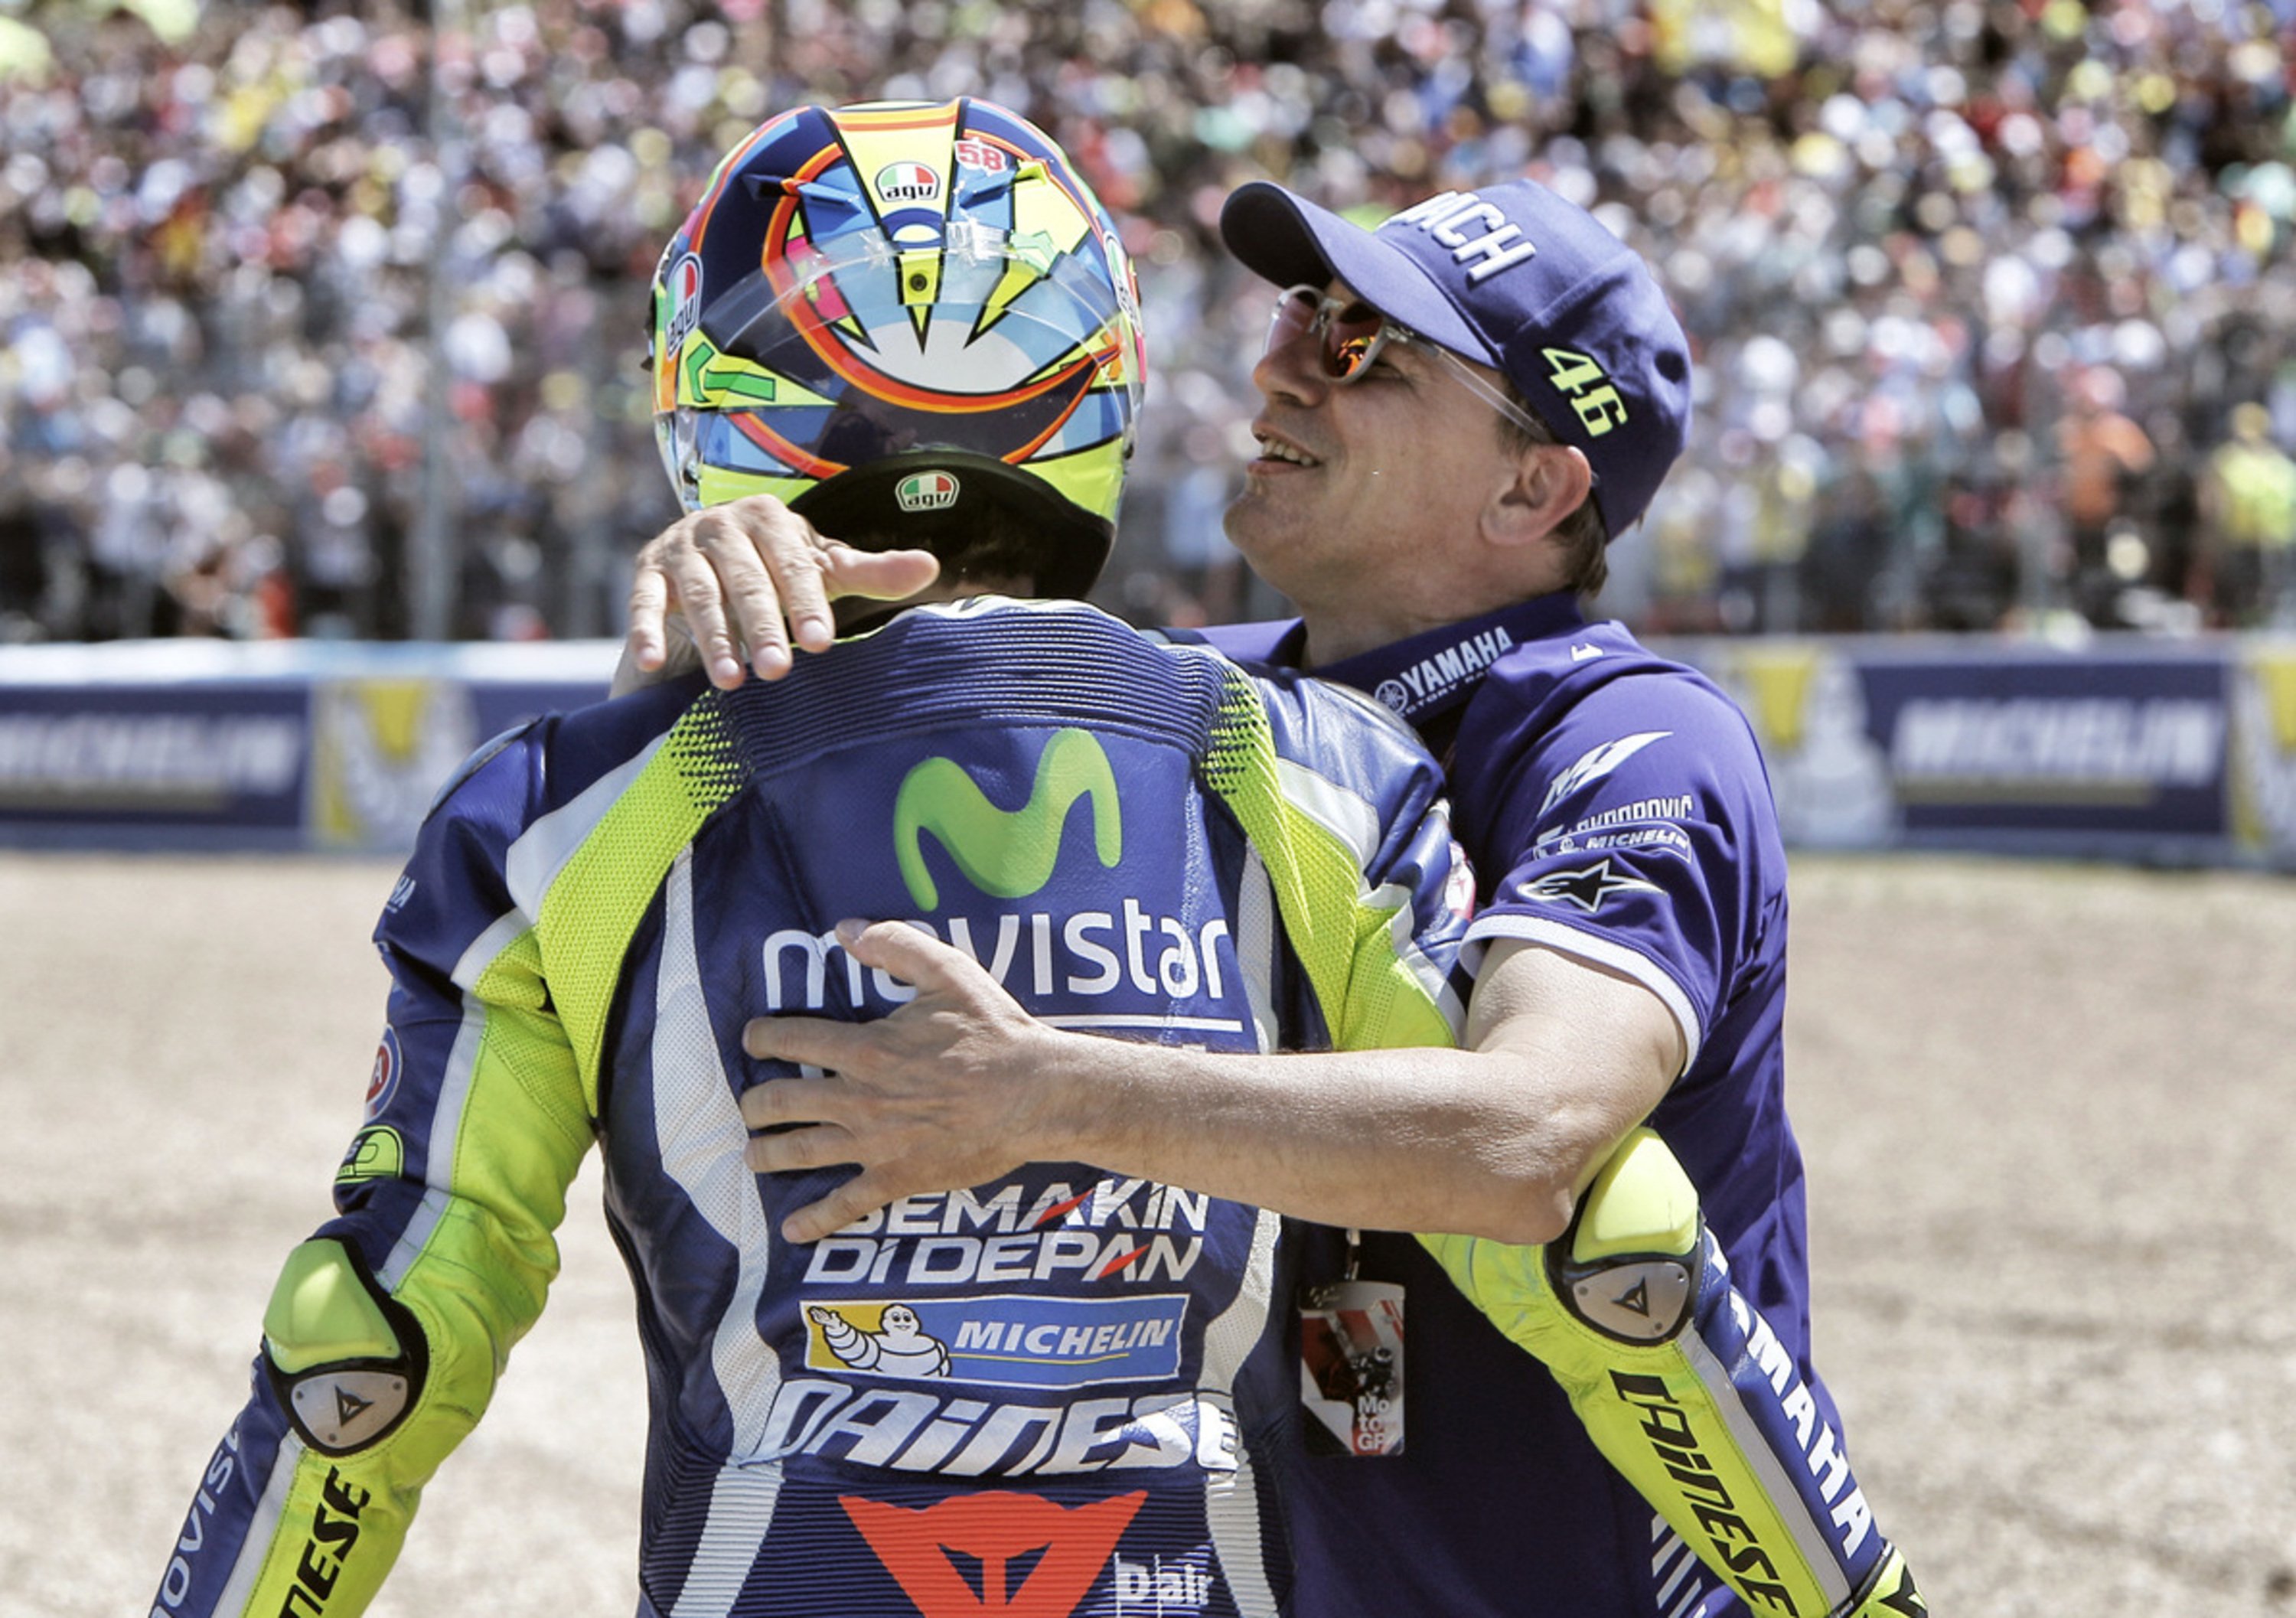 Nico Cereghini: &ldquo;Rossi, Cadalora, benzina fresca&rdquo;